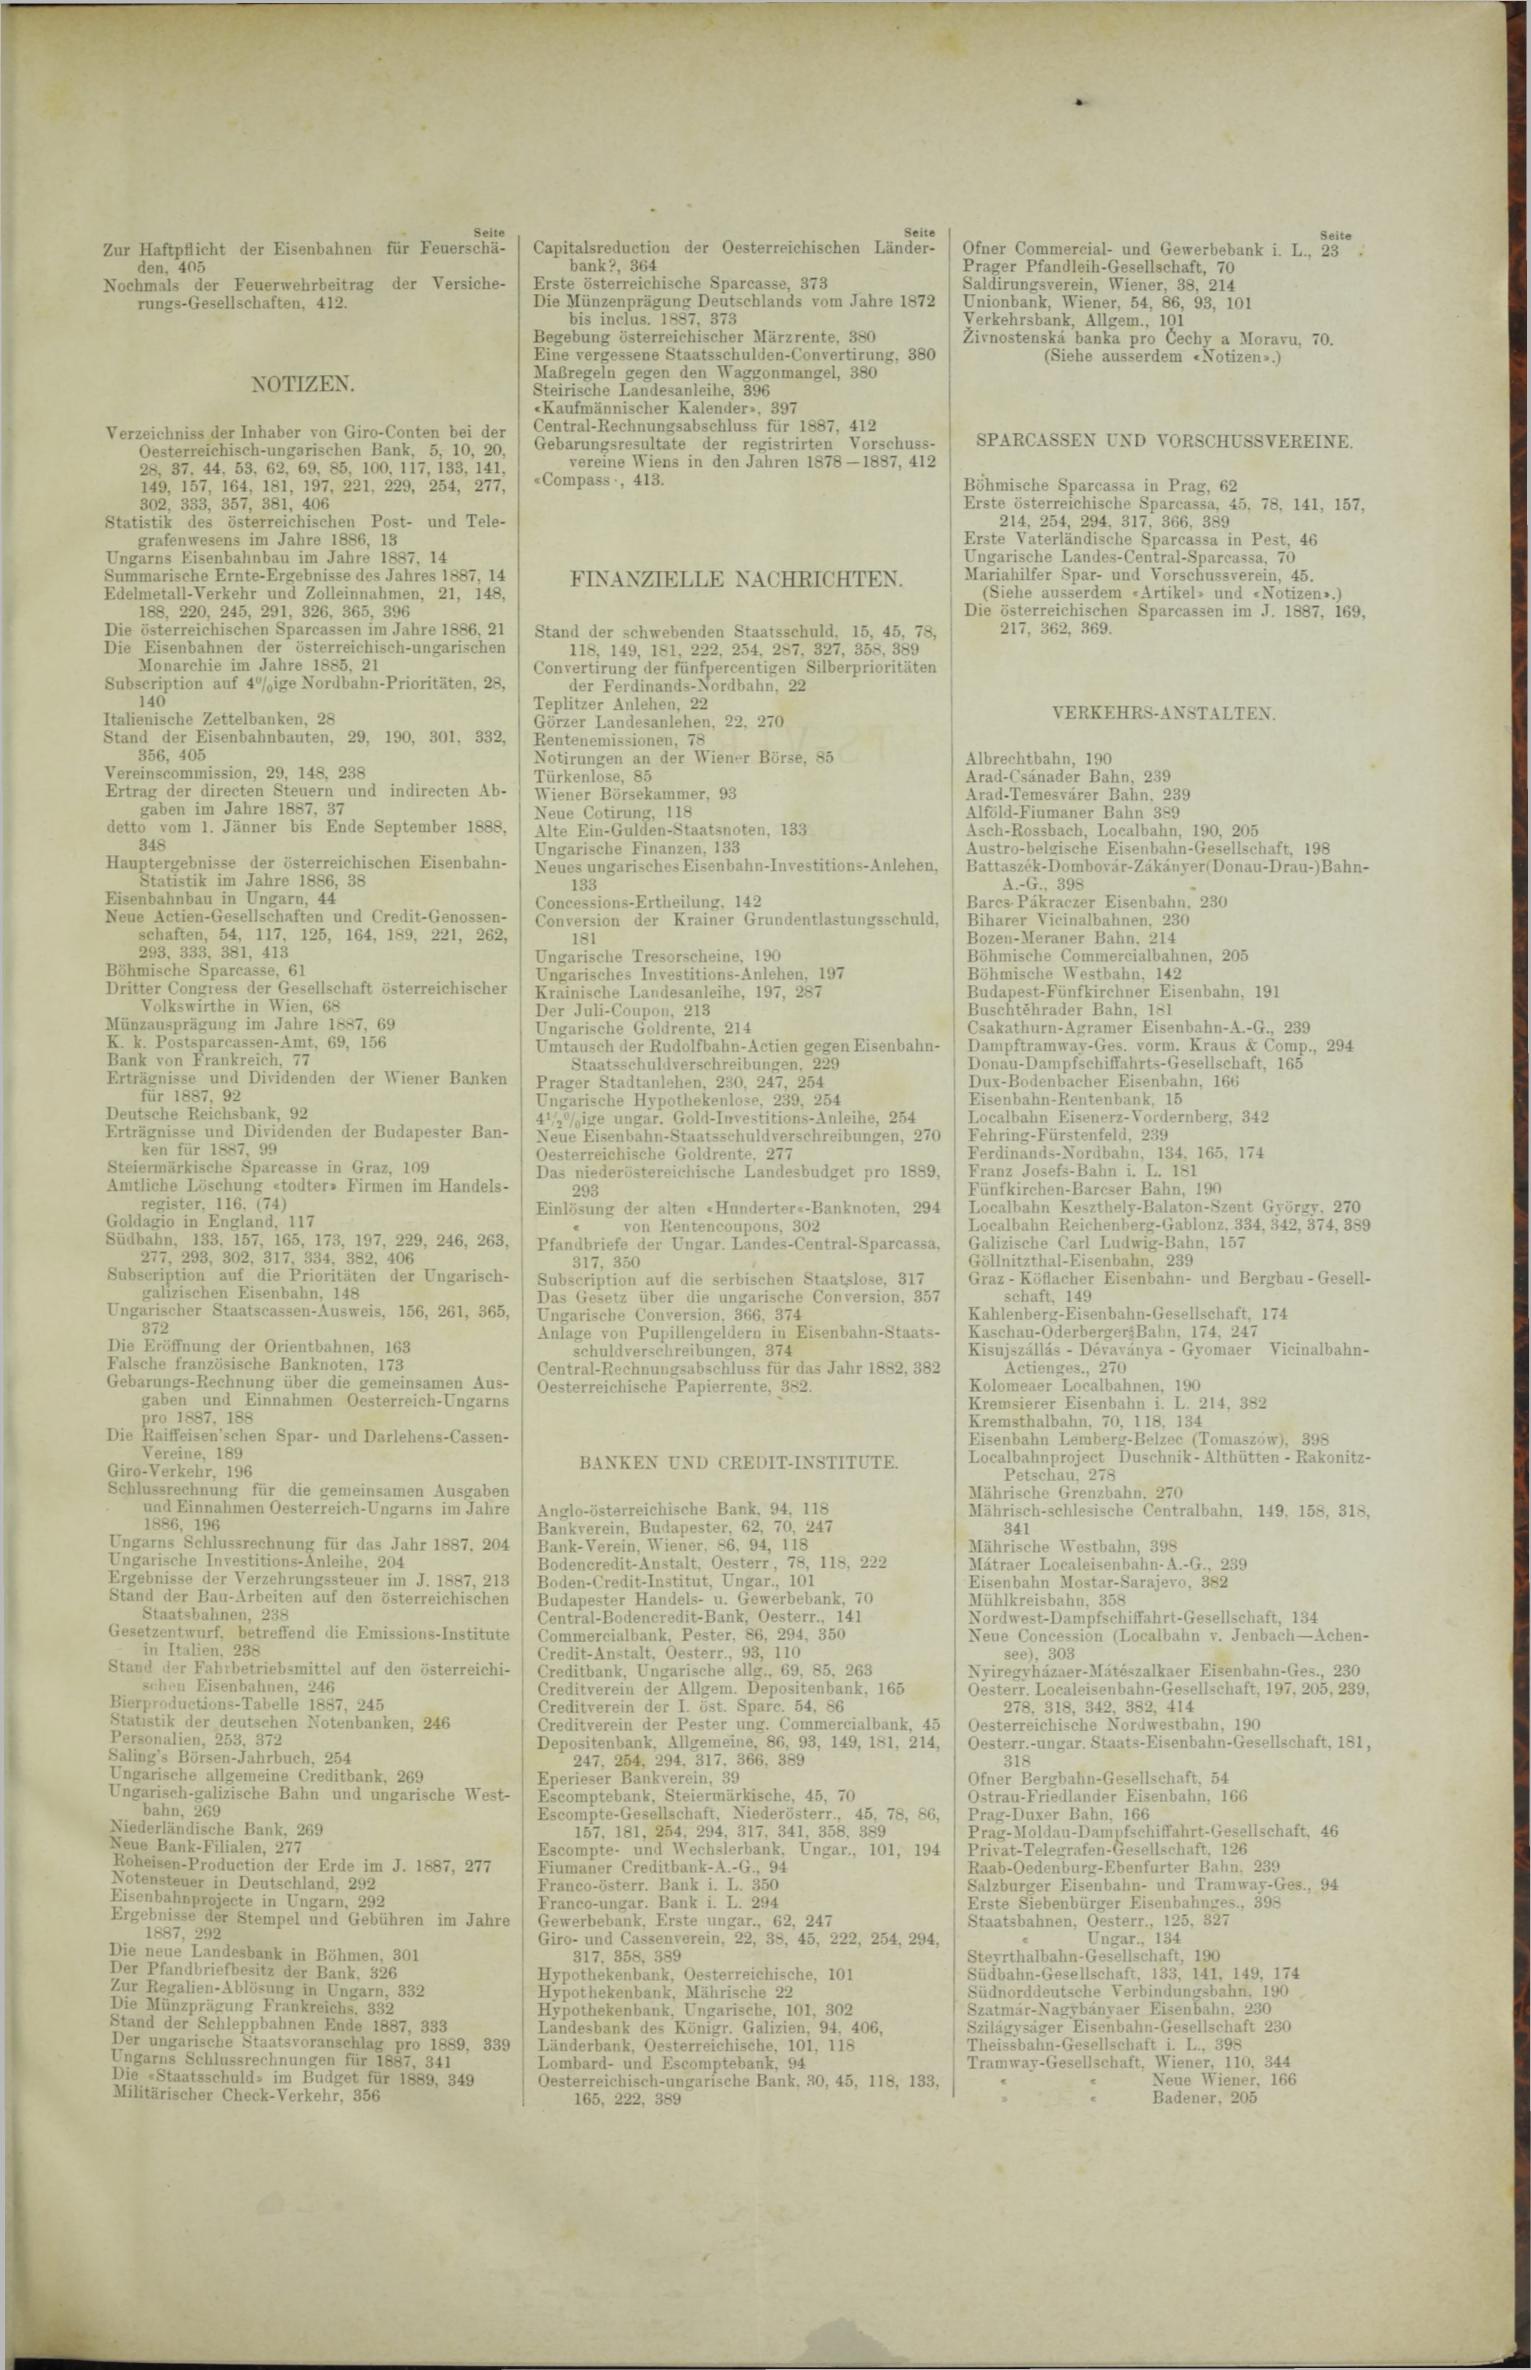 Der Tresor 02.08.1888 - Seite 11